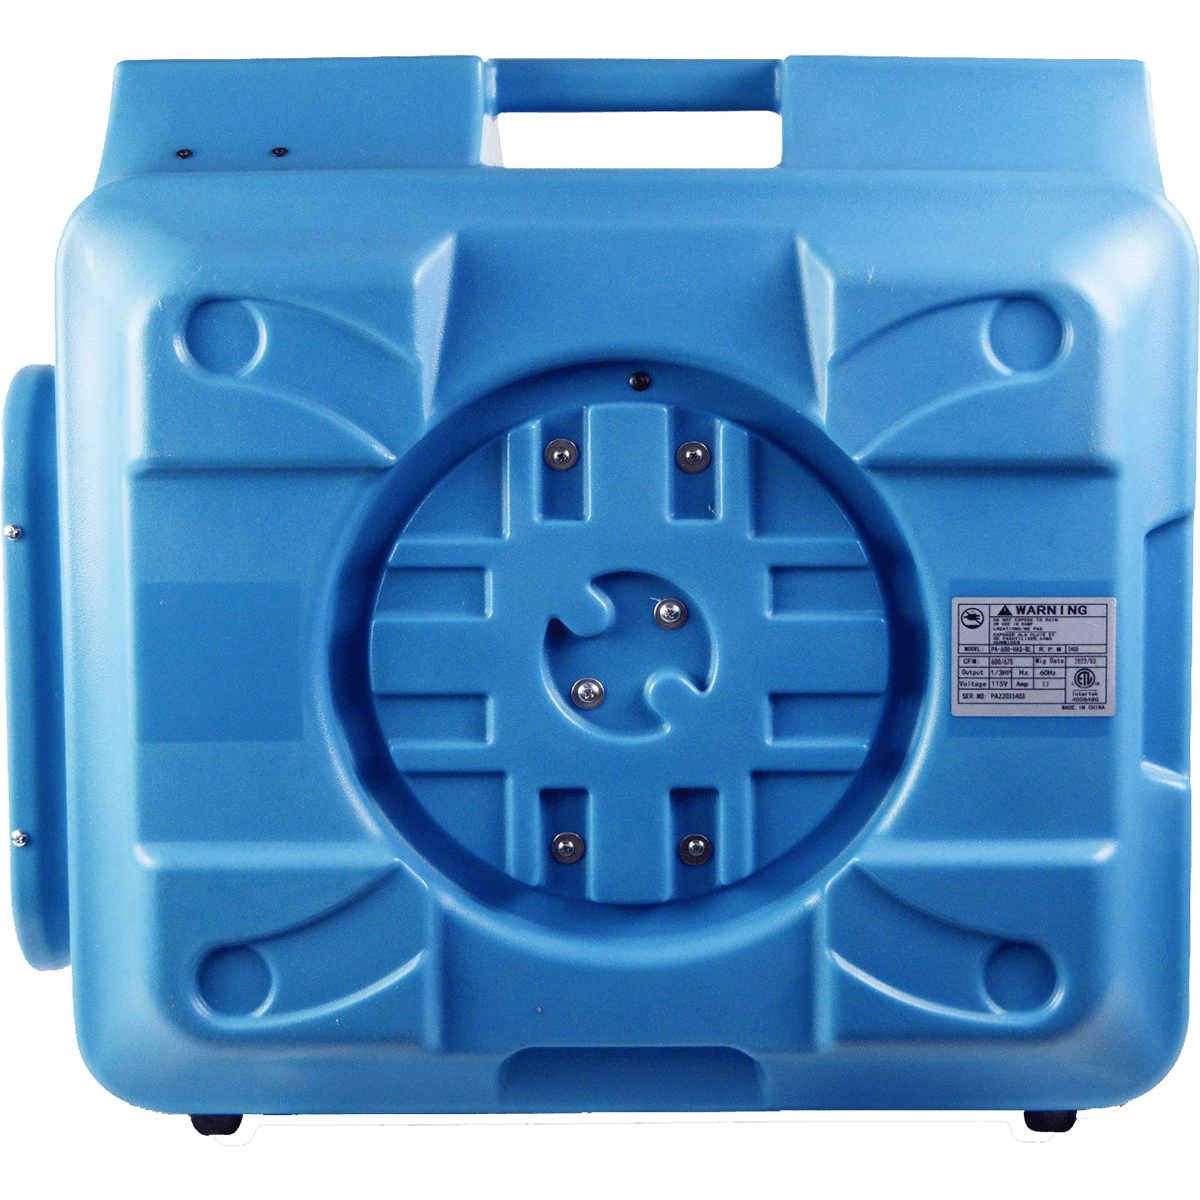 Puraero 1/4 HP 675 CFM 2.2A HEPA Air Scrubber Console Air Purifier